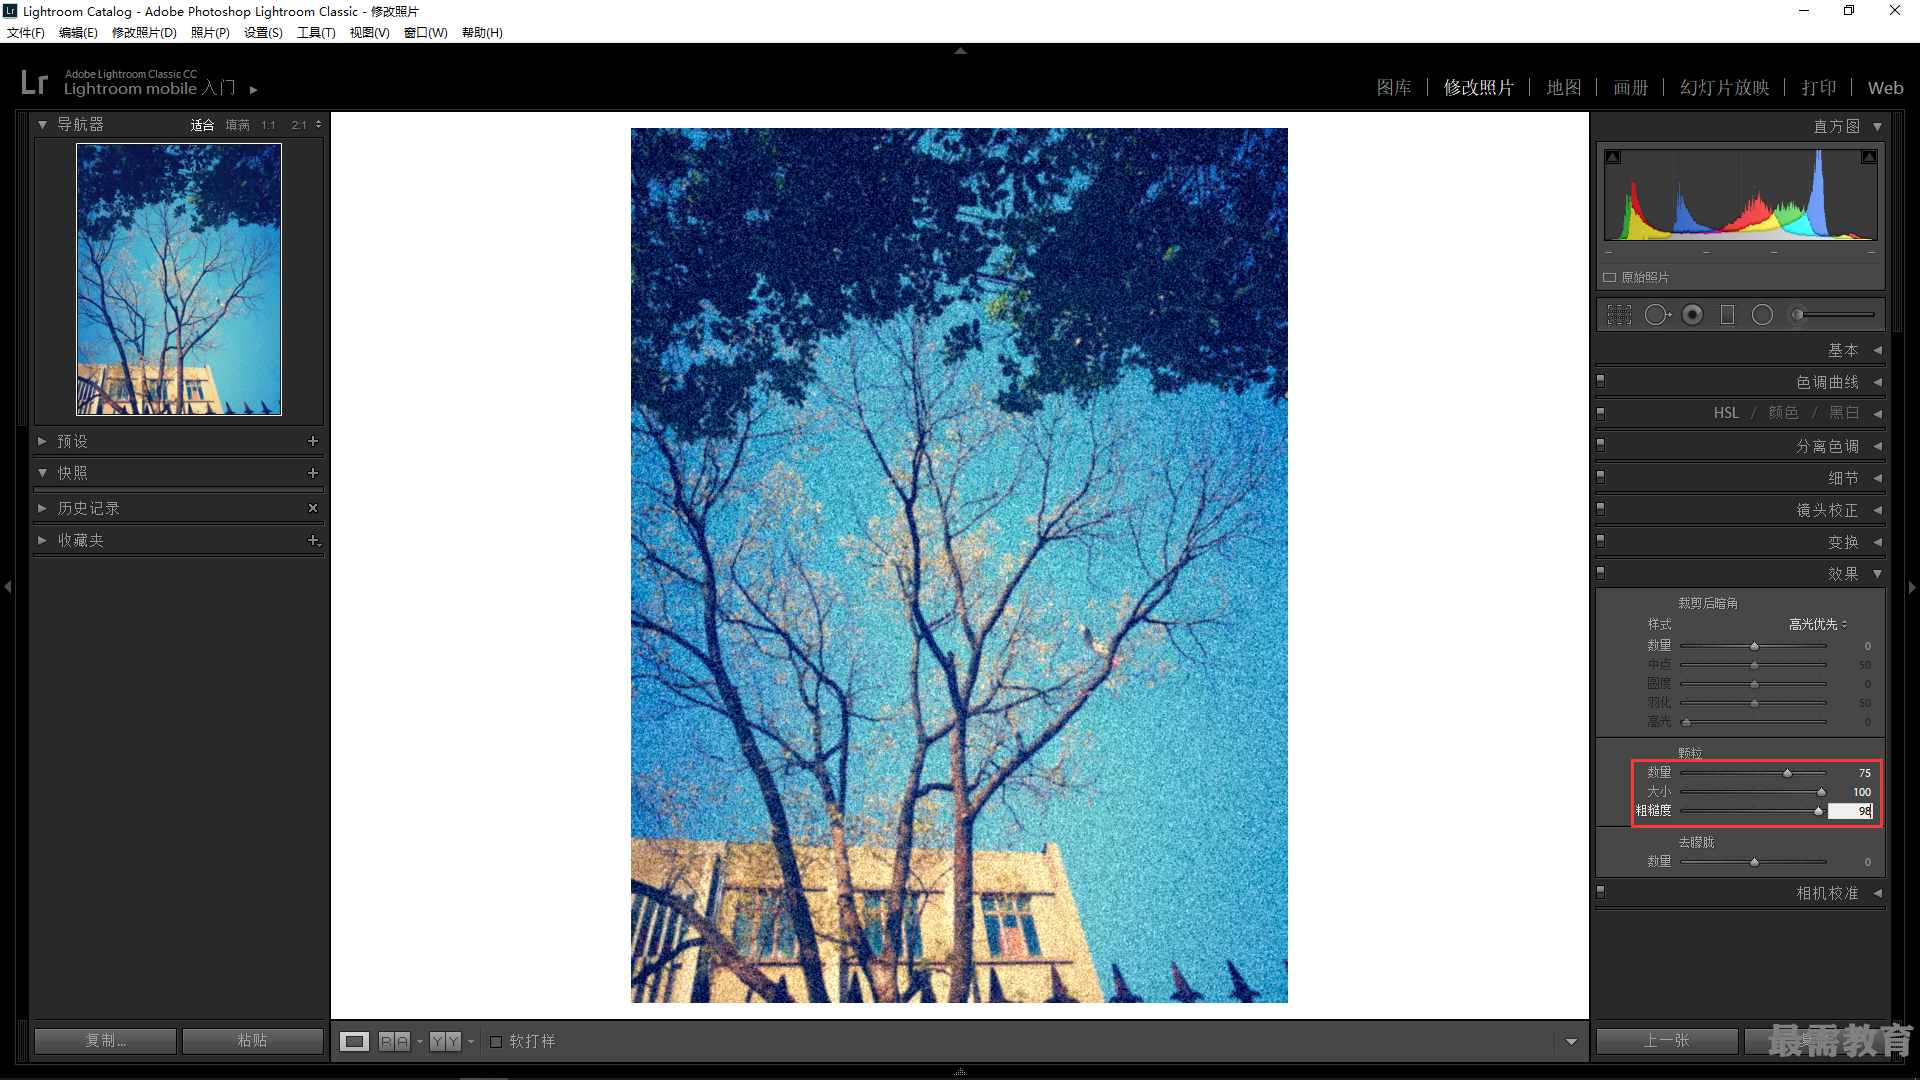 Photoshop2020教程——添加杂色制作噪点画面 - 最需教育